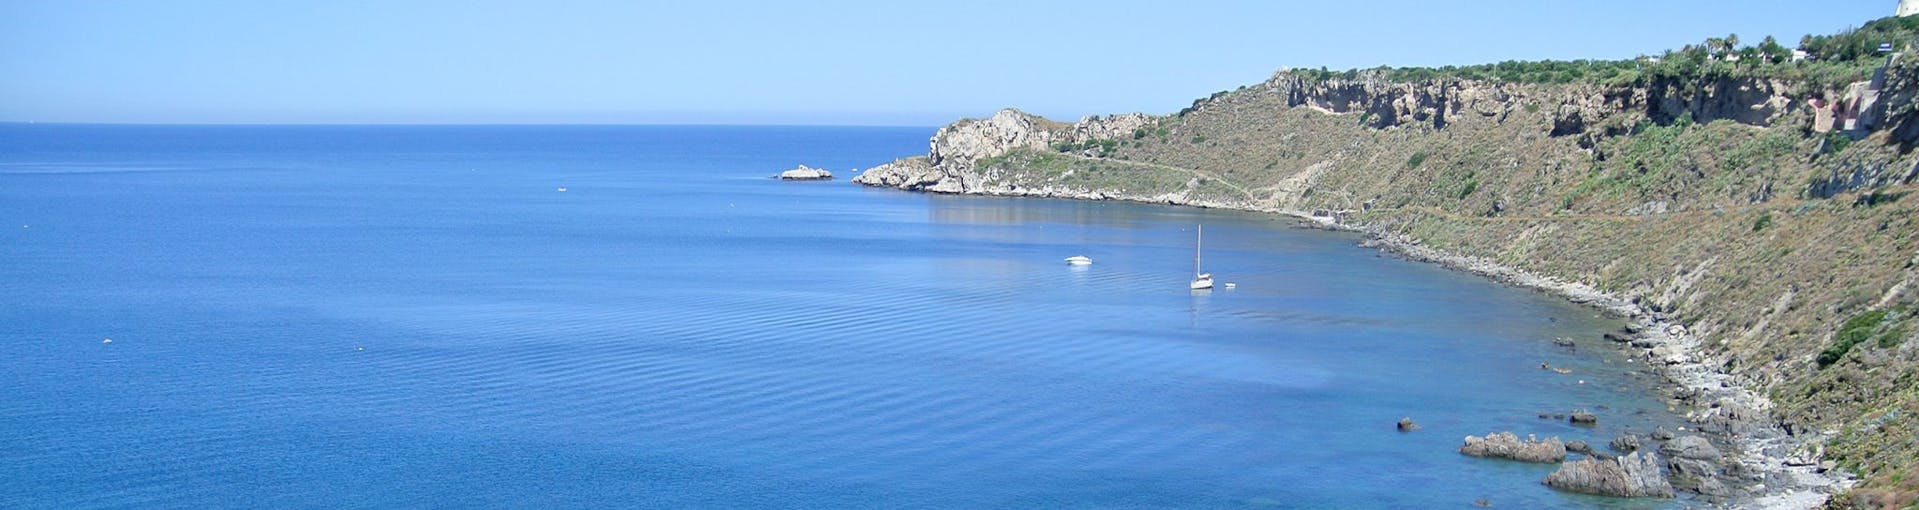 Vista dalla barca di Sky Sea Charter durante la gita in barca privata da Milazzo verso Vulcano e Lipari.